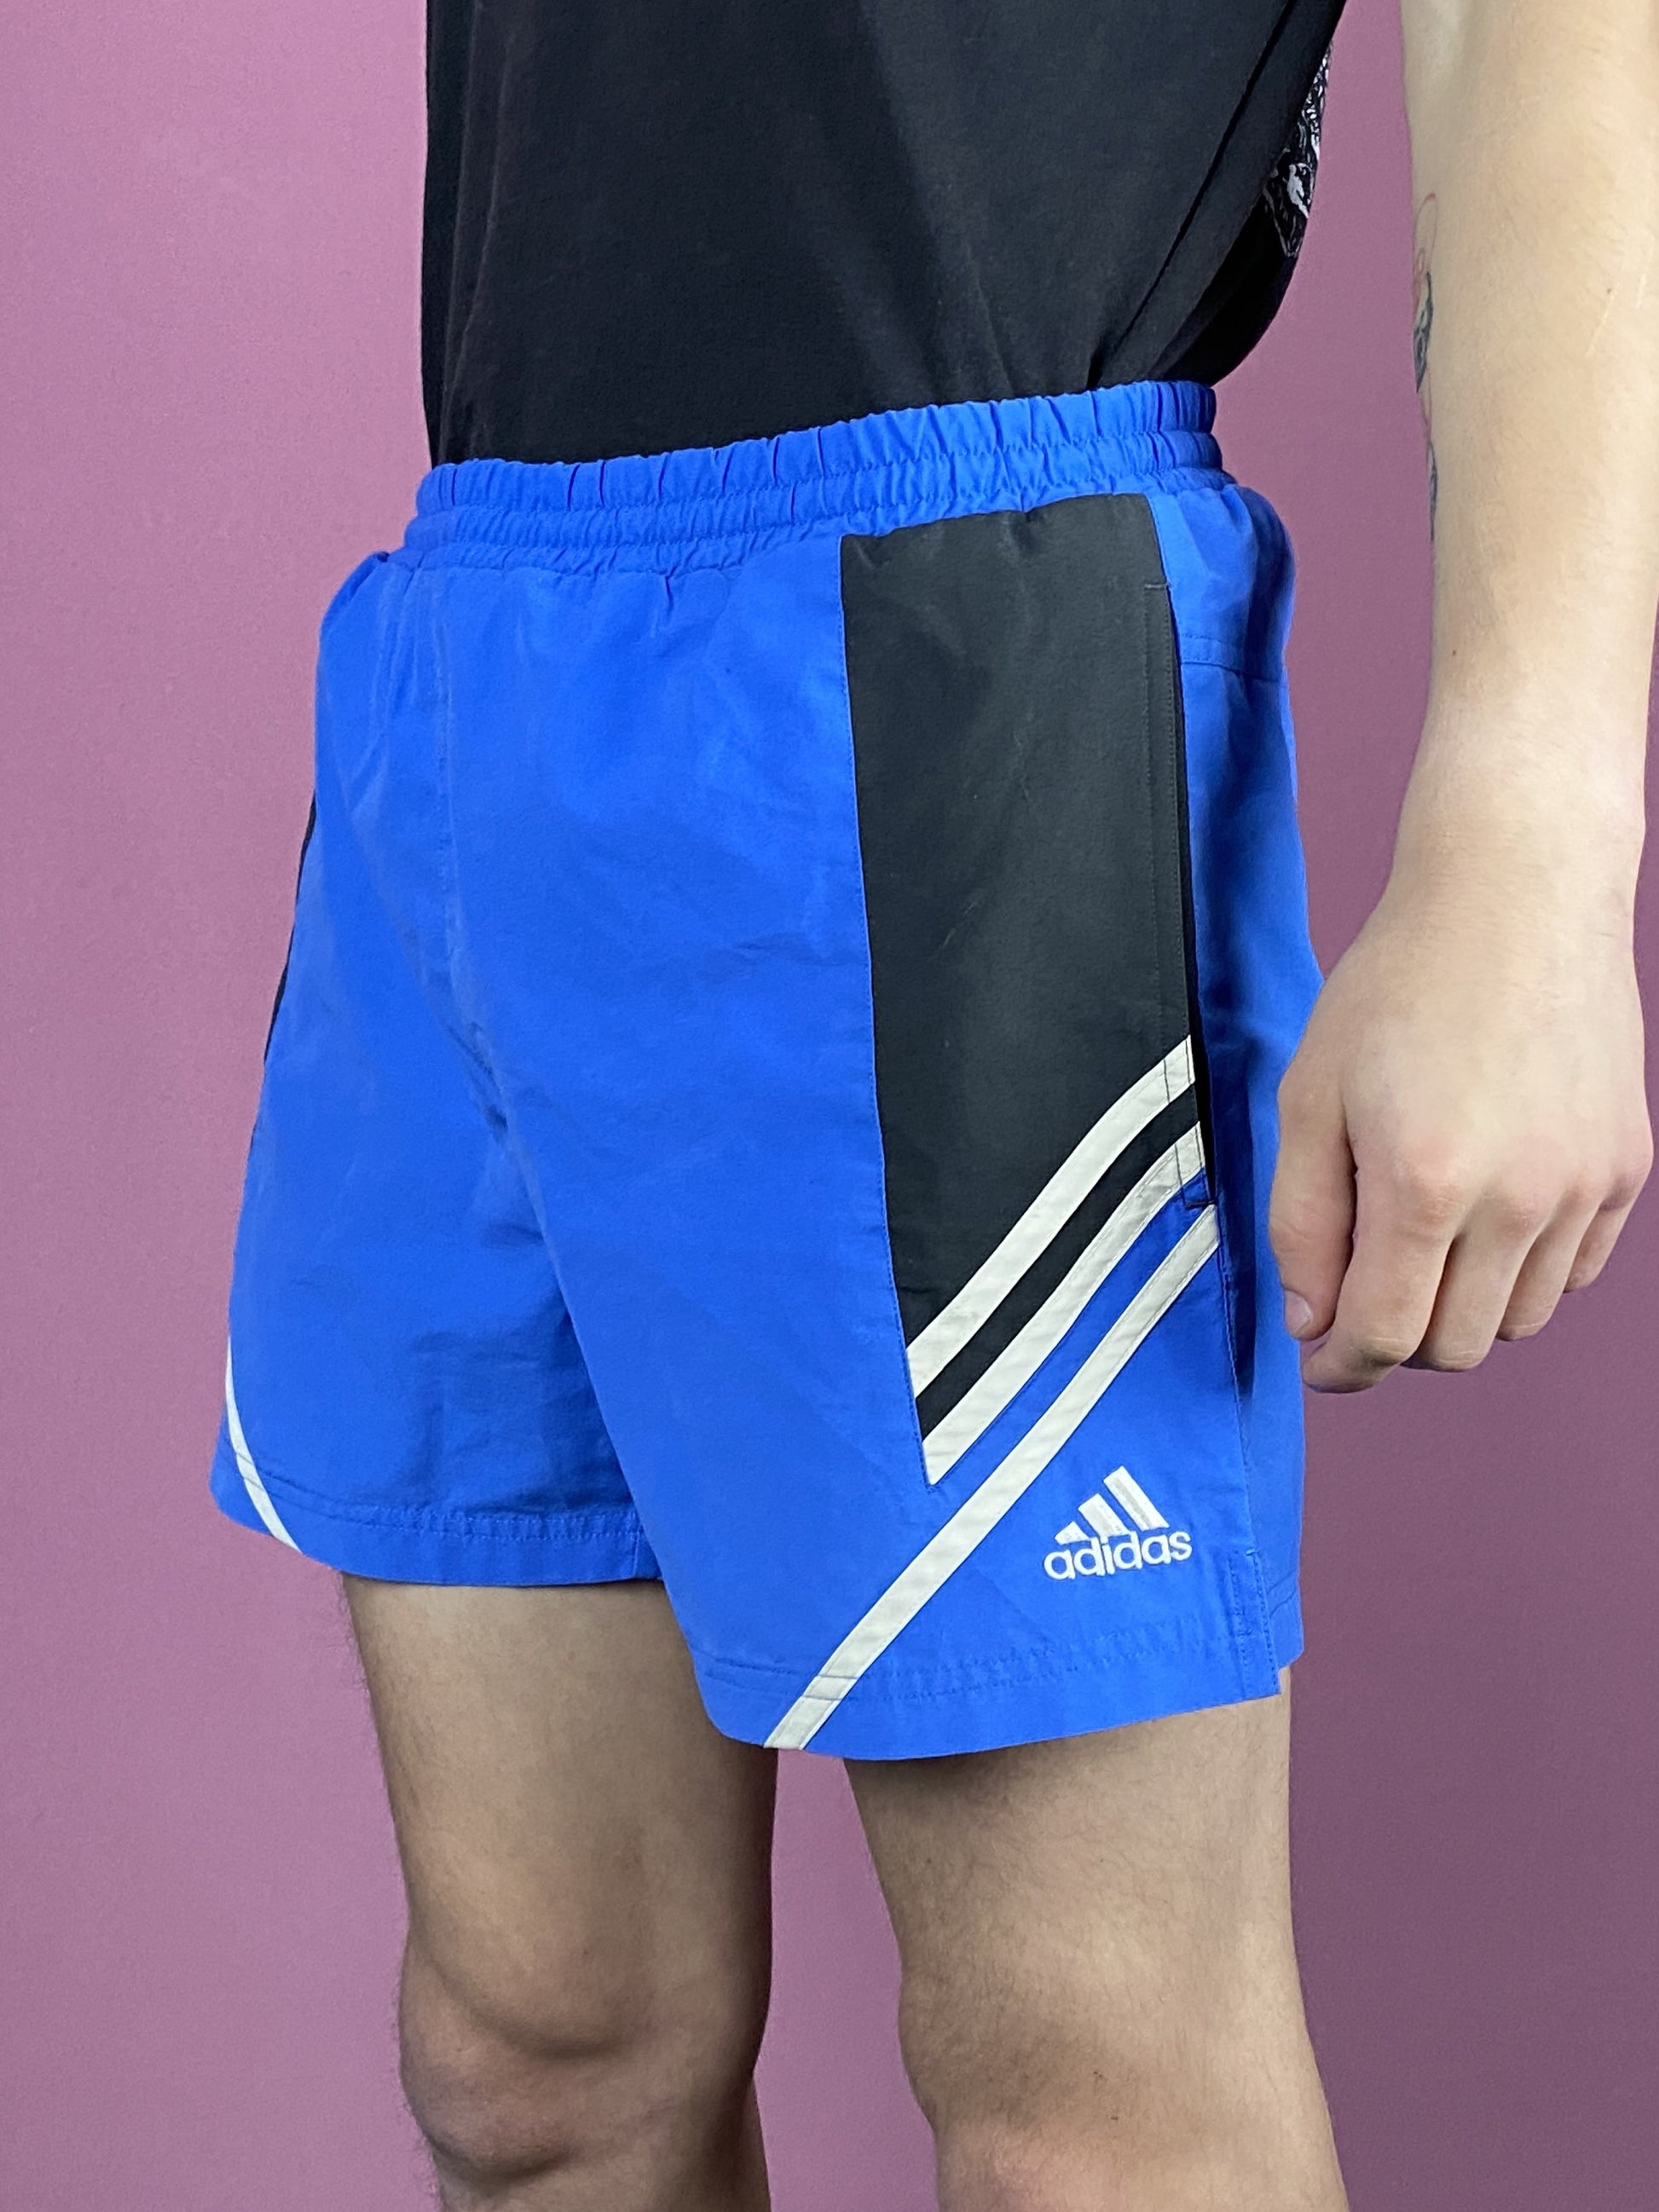 Adidas Vintage Men's Sport Shorts - Medium Blue Polyester